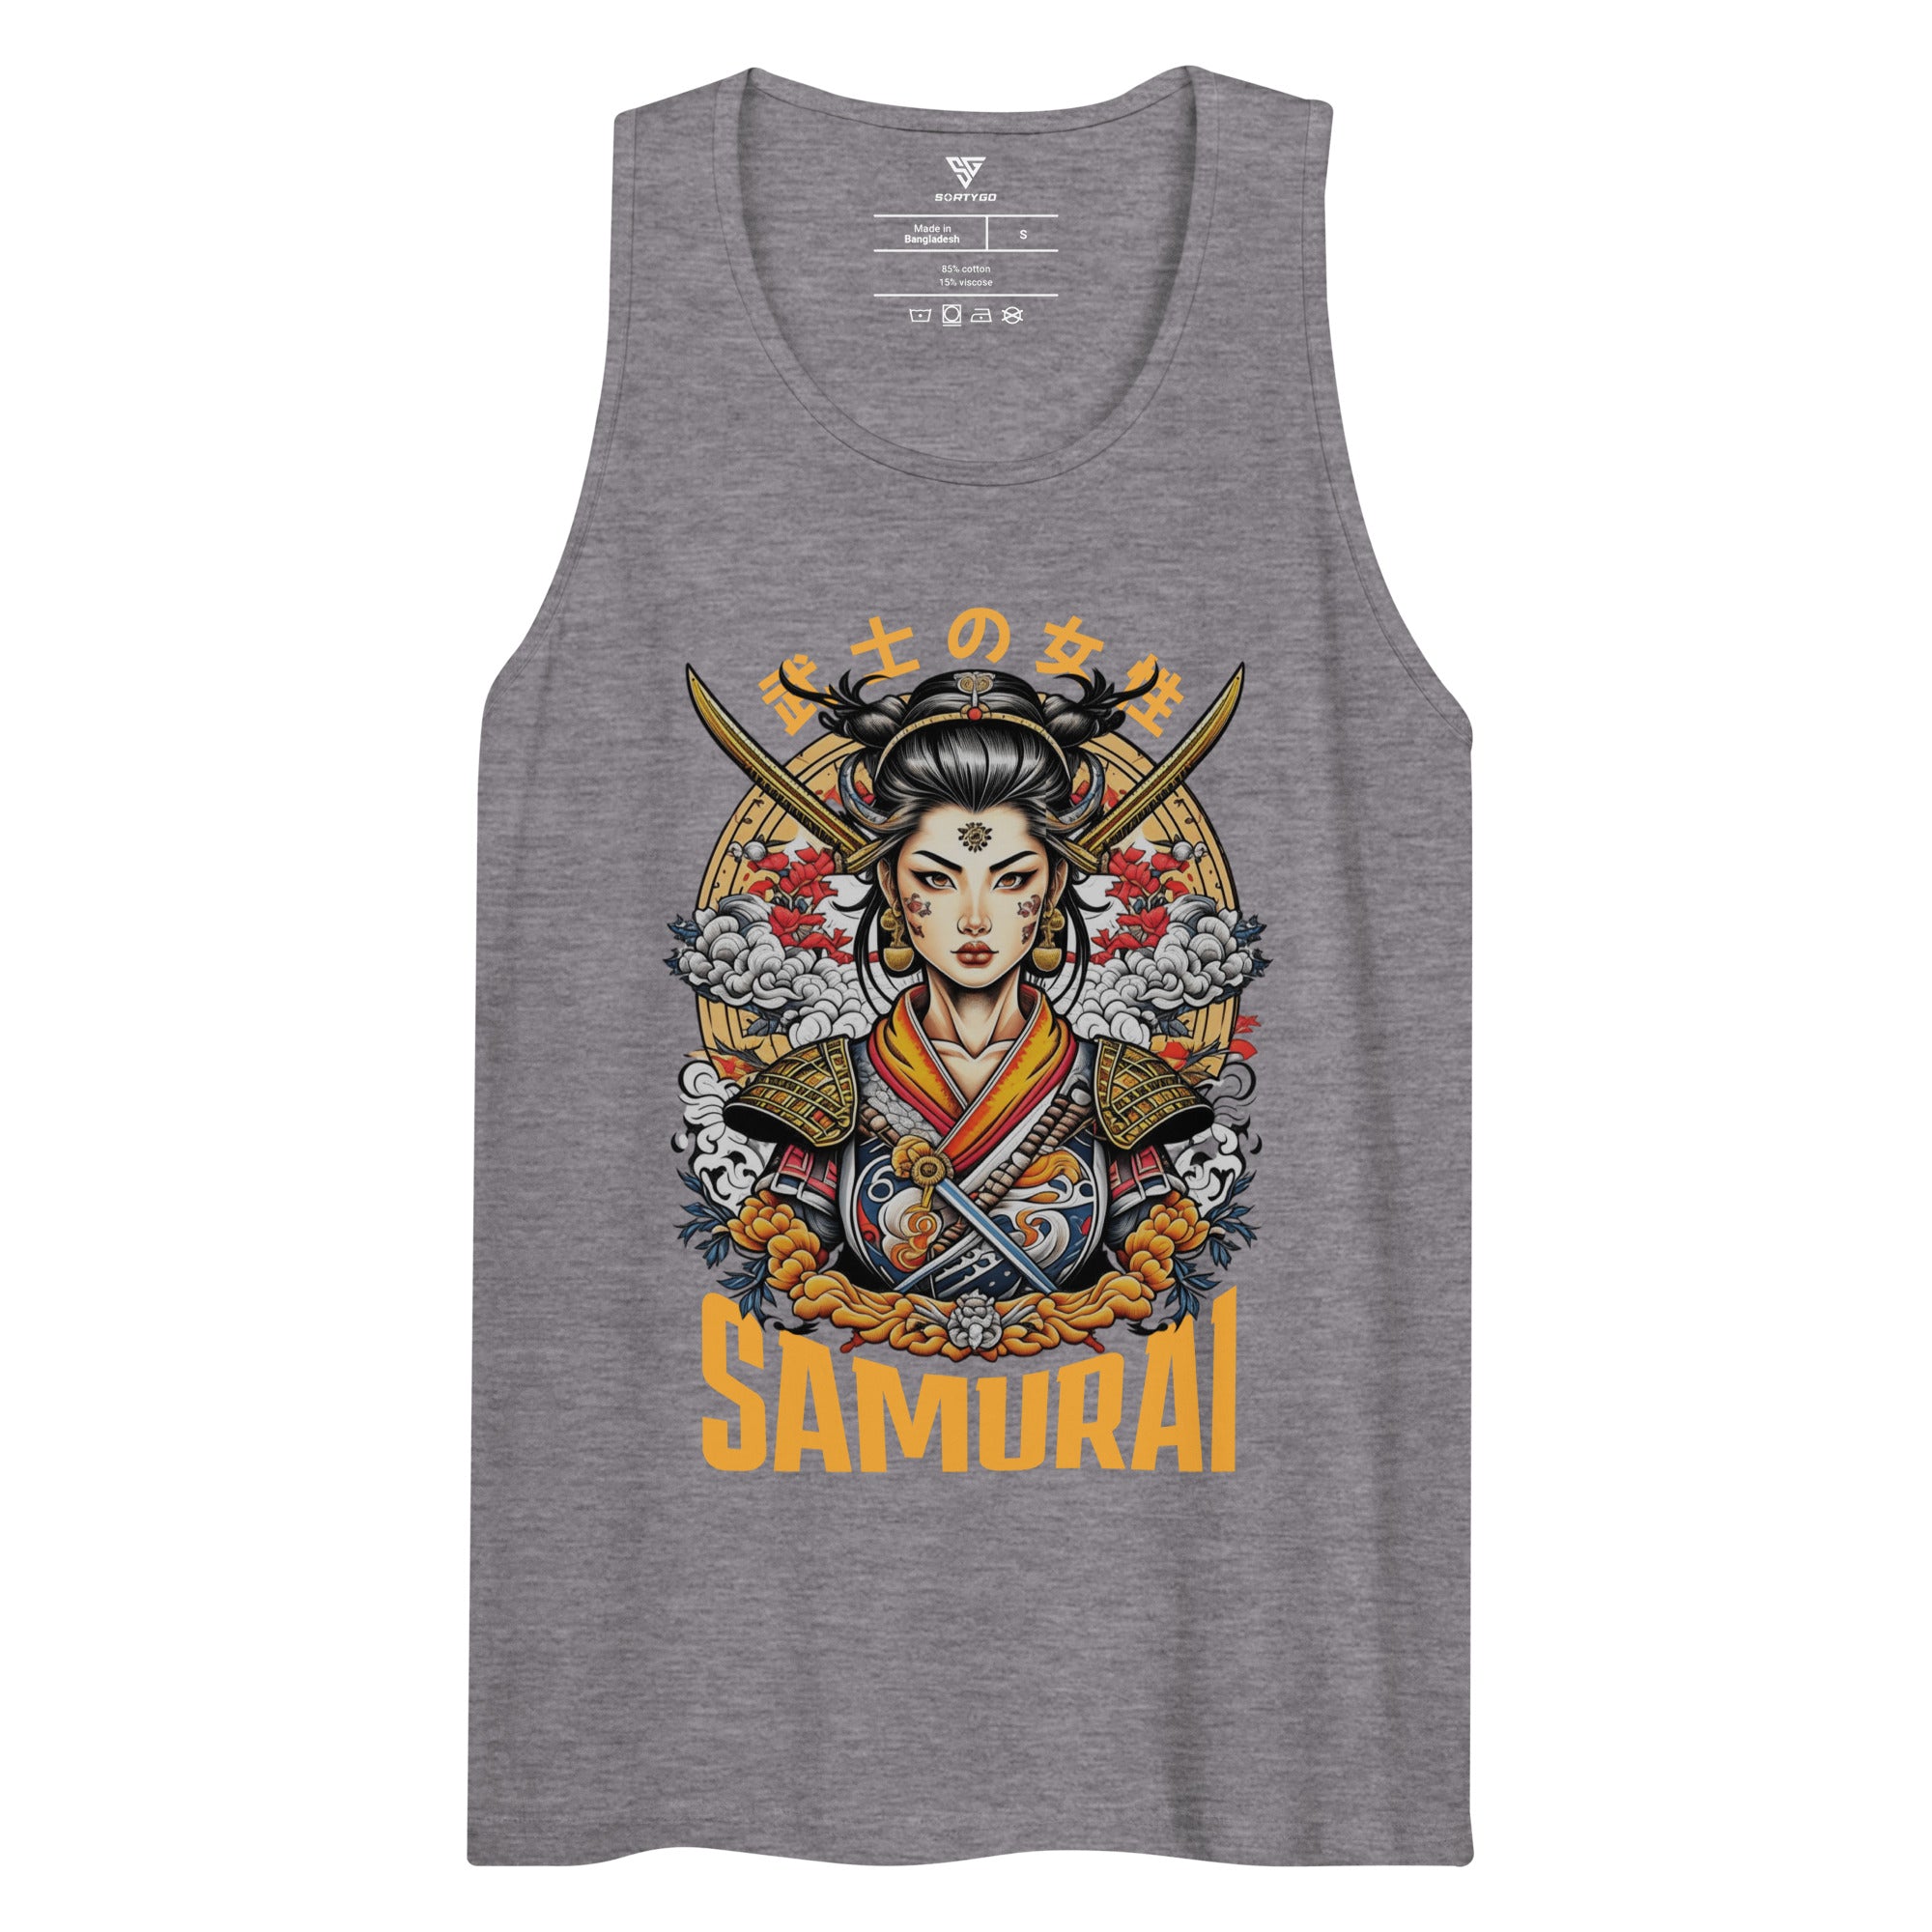 SORTYGO - Samurai Men Premium Cotton Tank Top in Athletic Heather